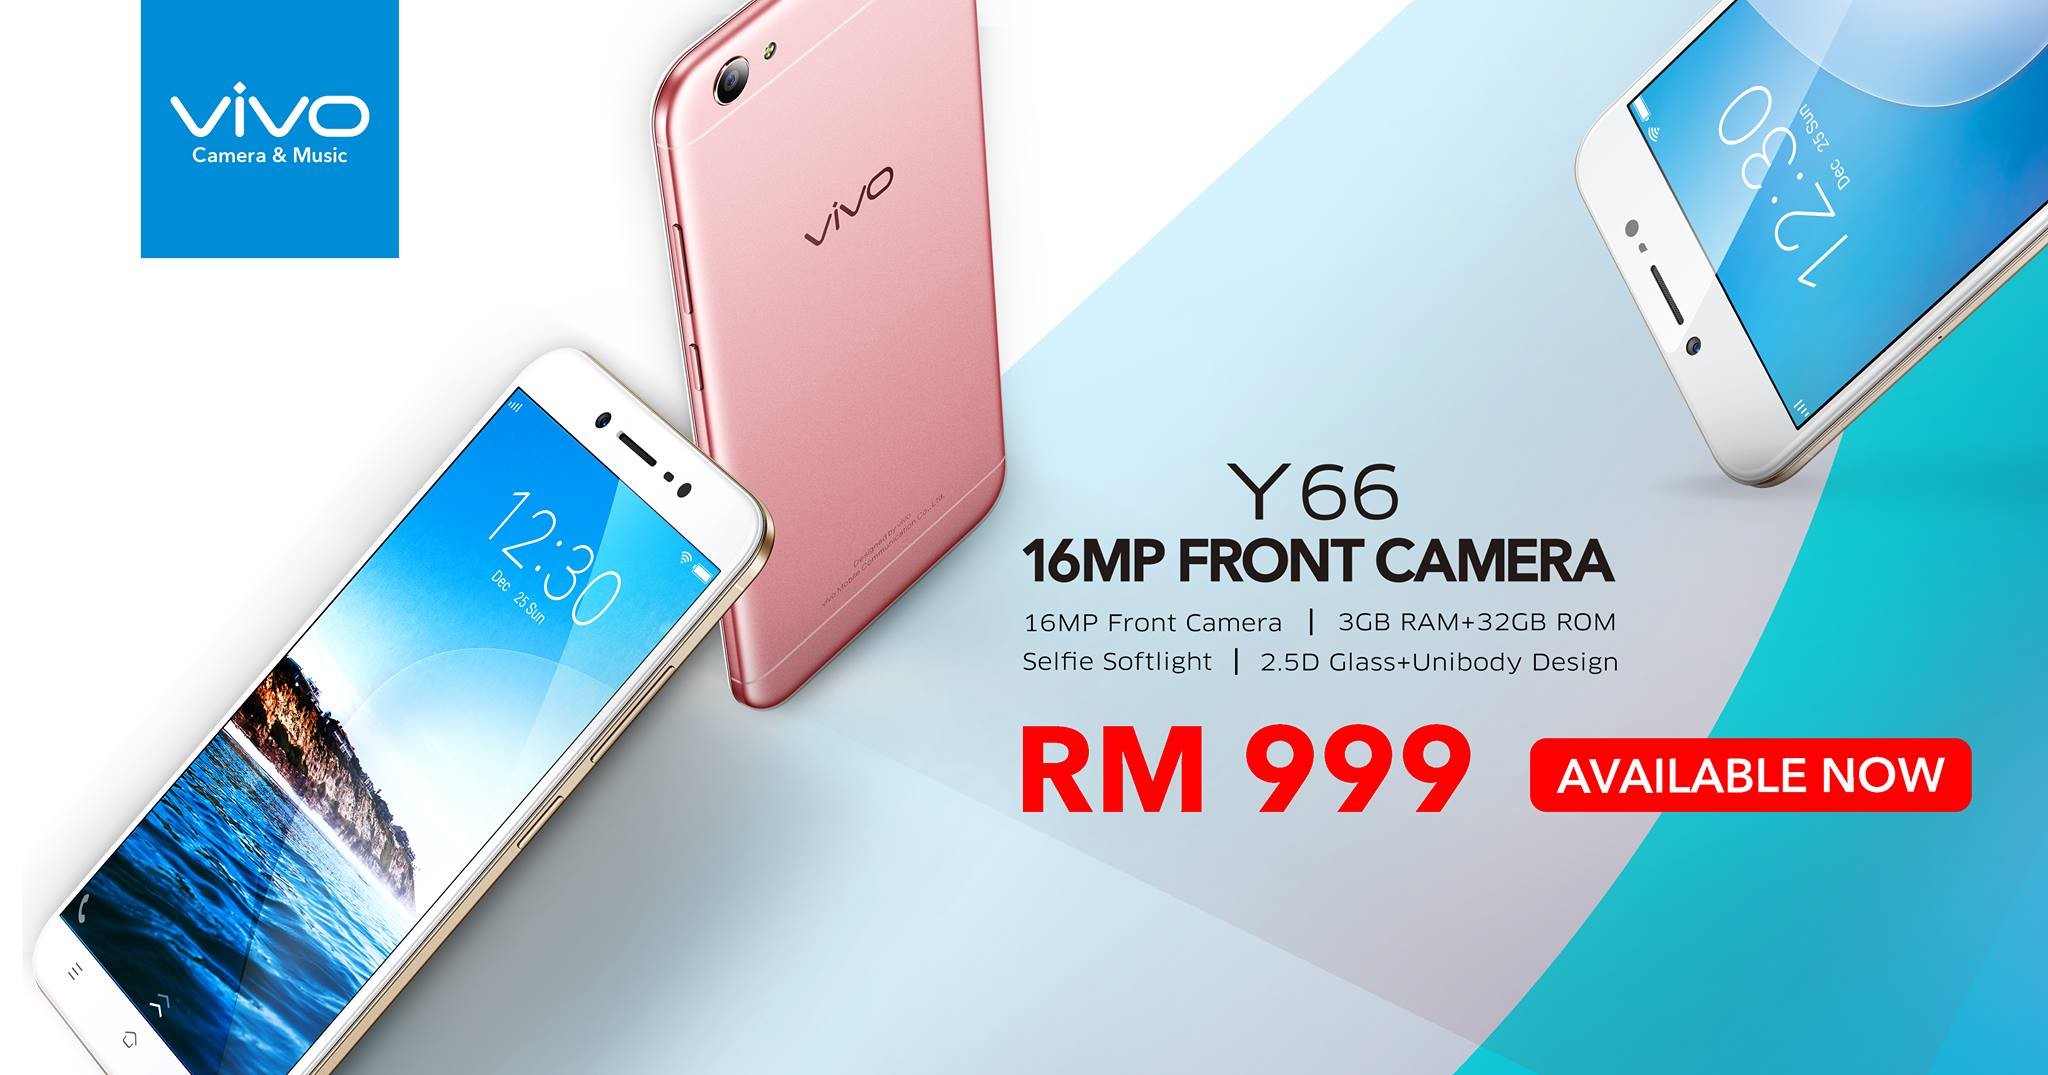 Vivo Y66 lanzado en Malasia con un precio de RM 999